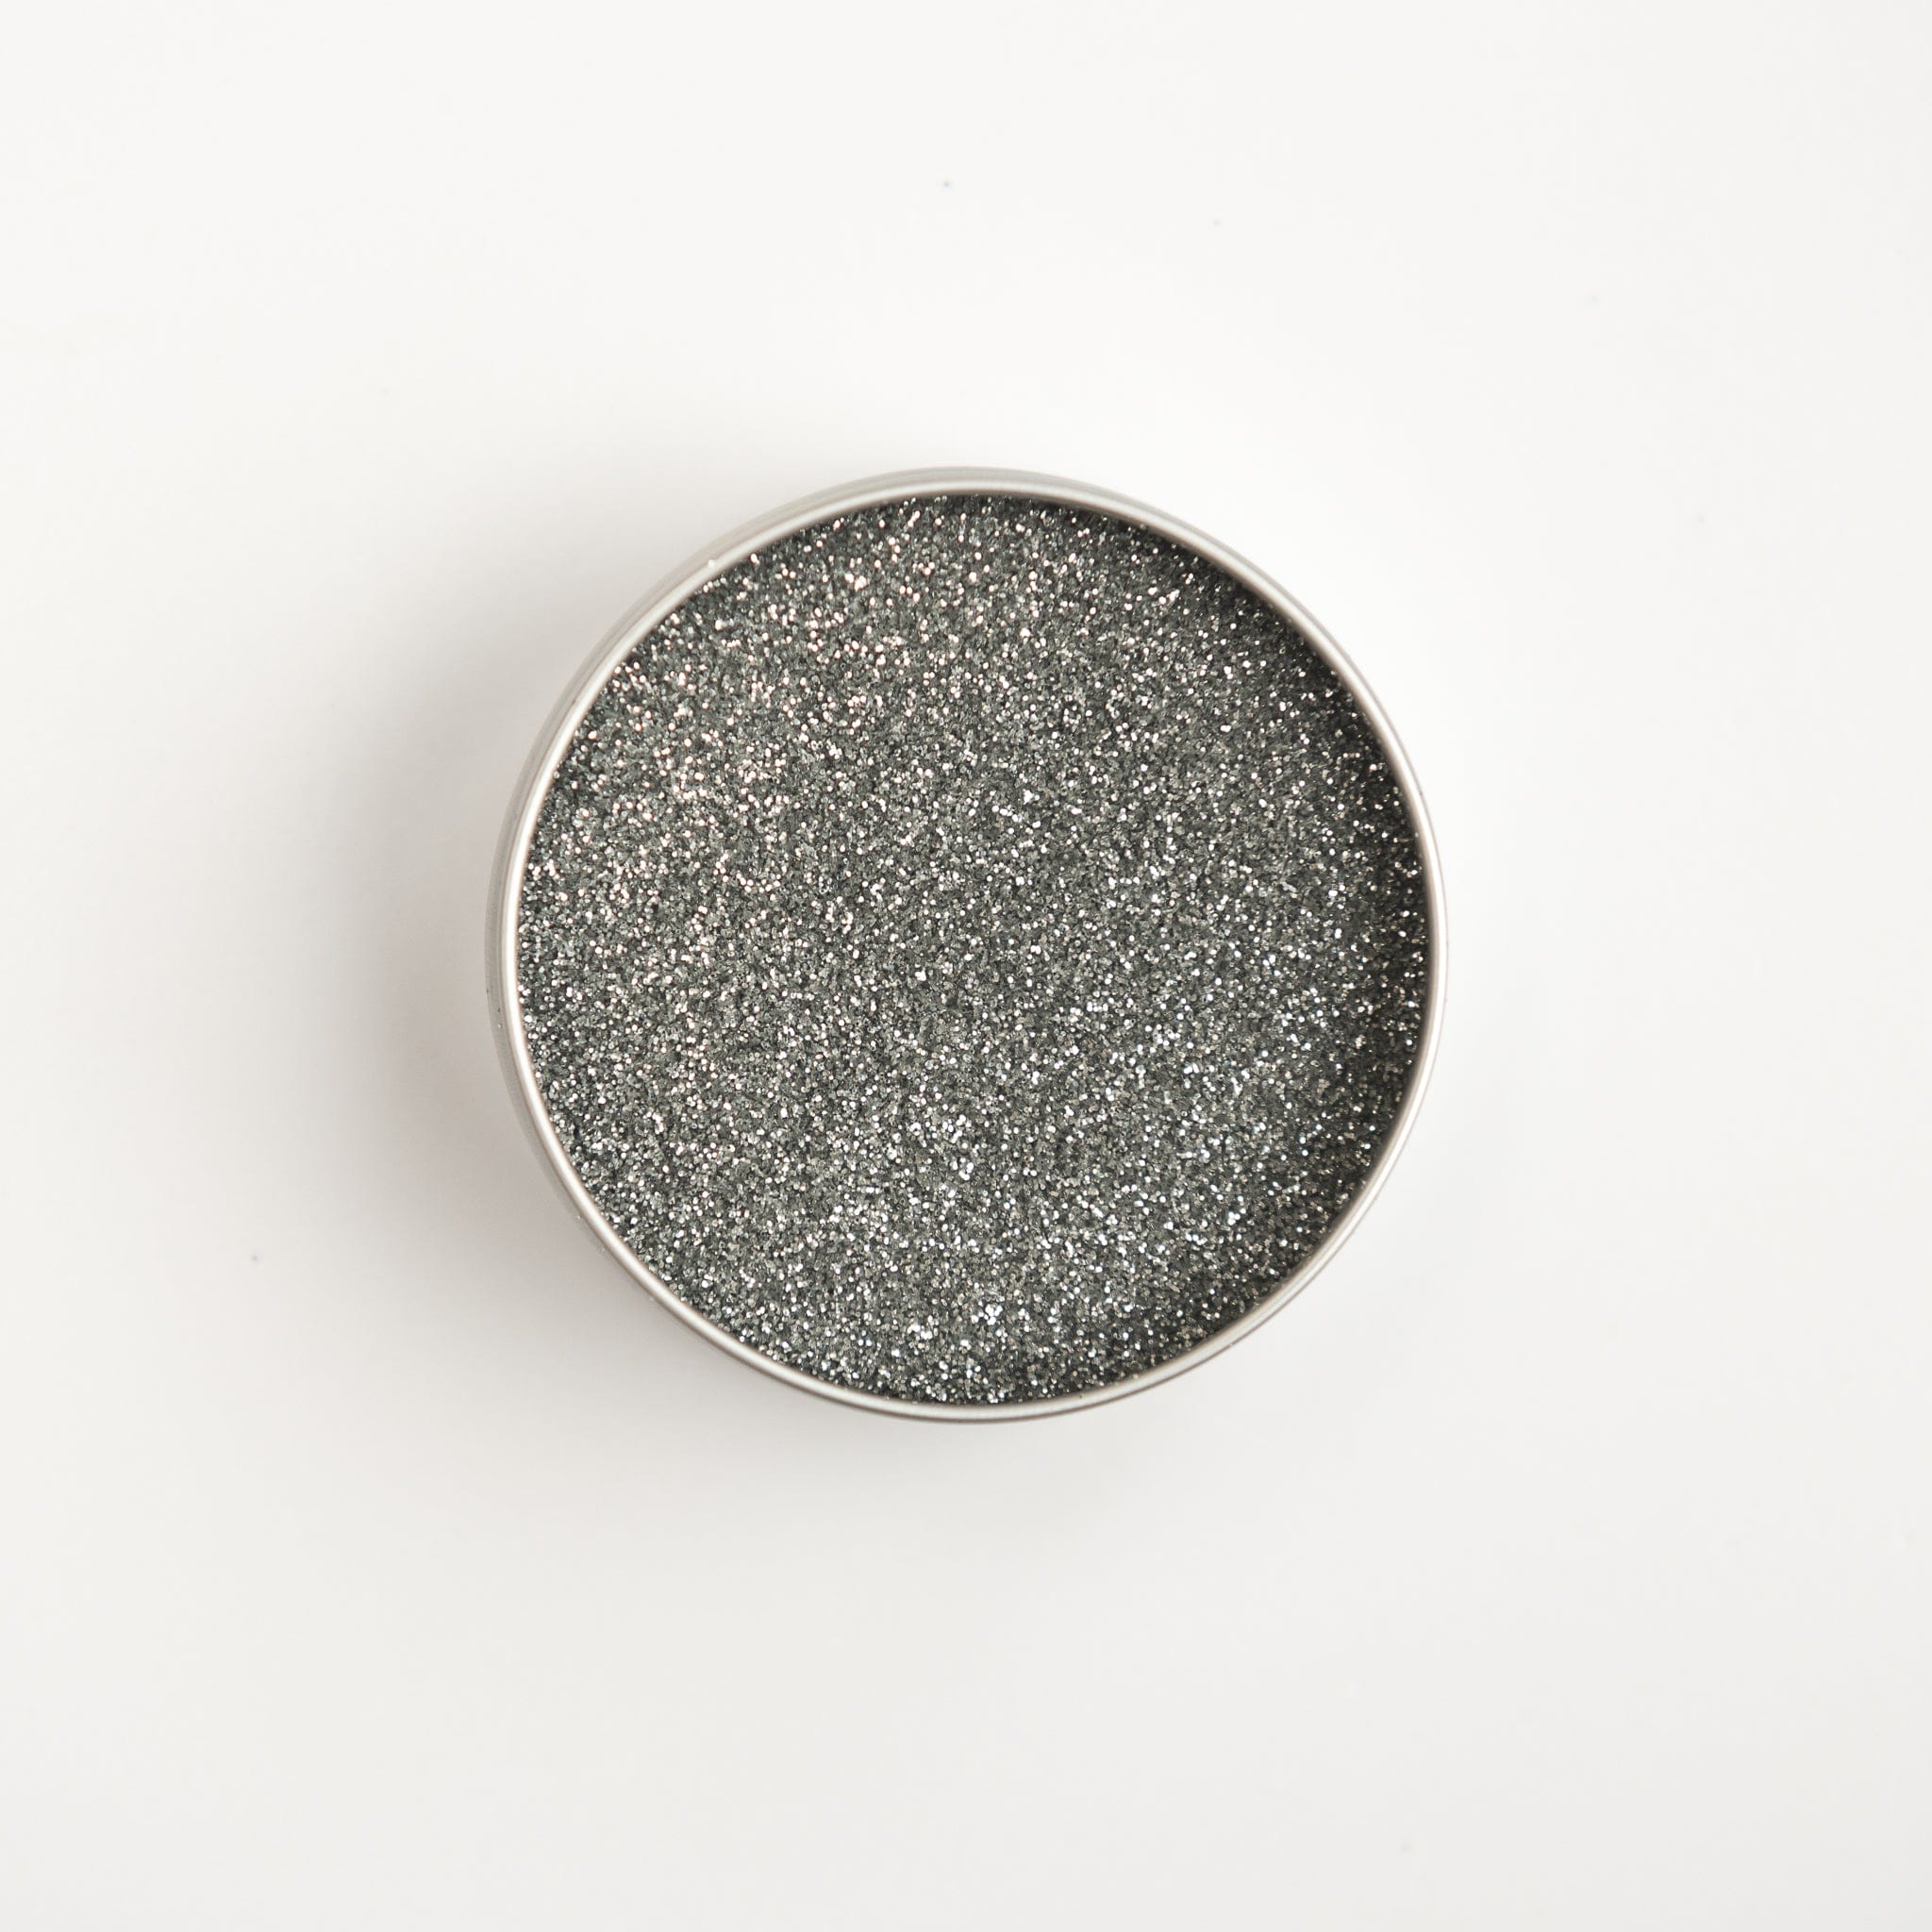 Holo Silver - Biodegradable Glitter (Fine Flakes)